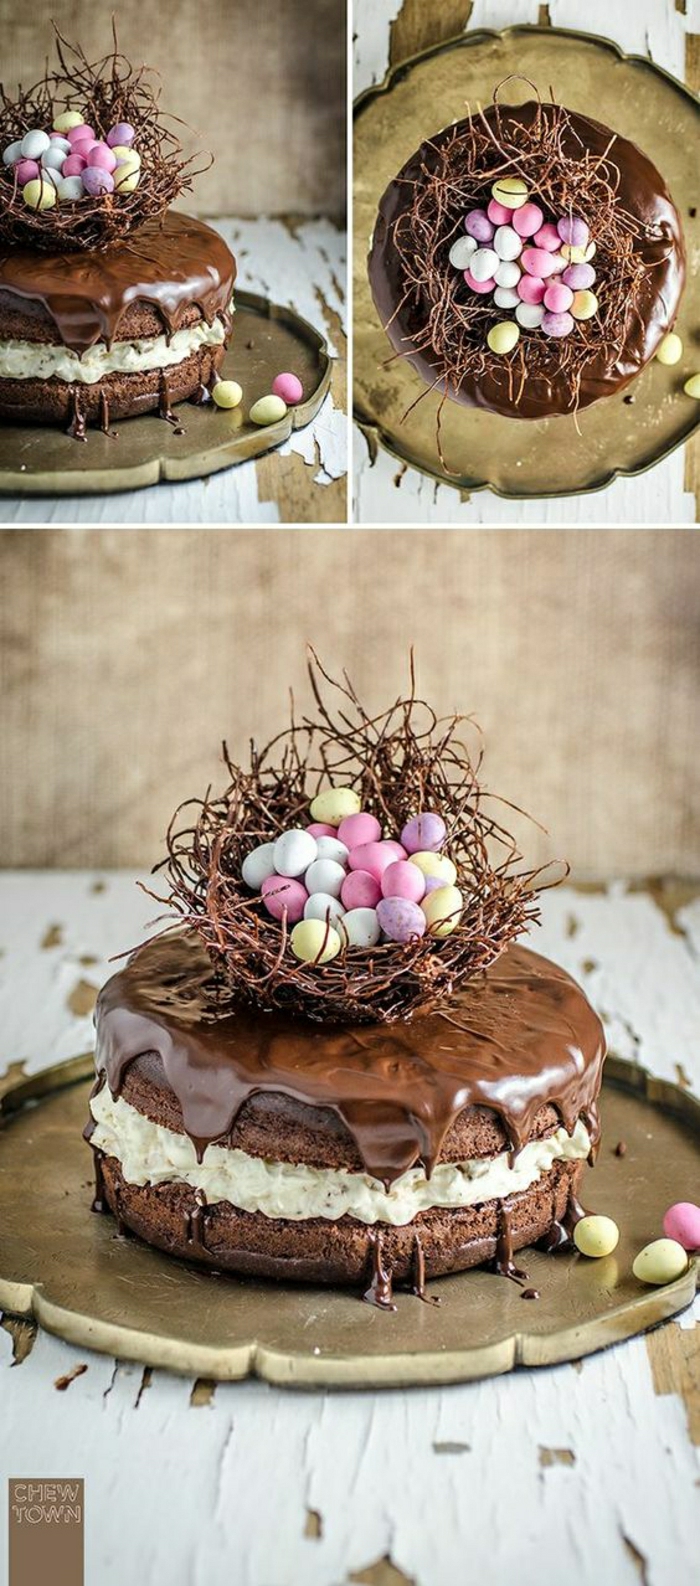 עוגת שוקולד עם פסחא מניע סל פסחא עם ביצים צבעוניות קטנות